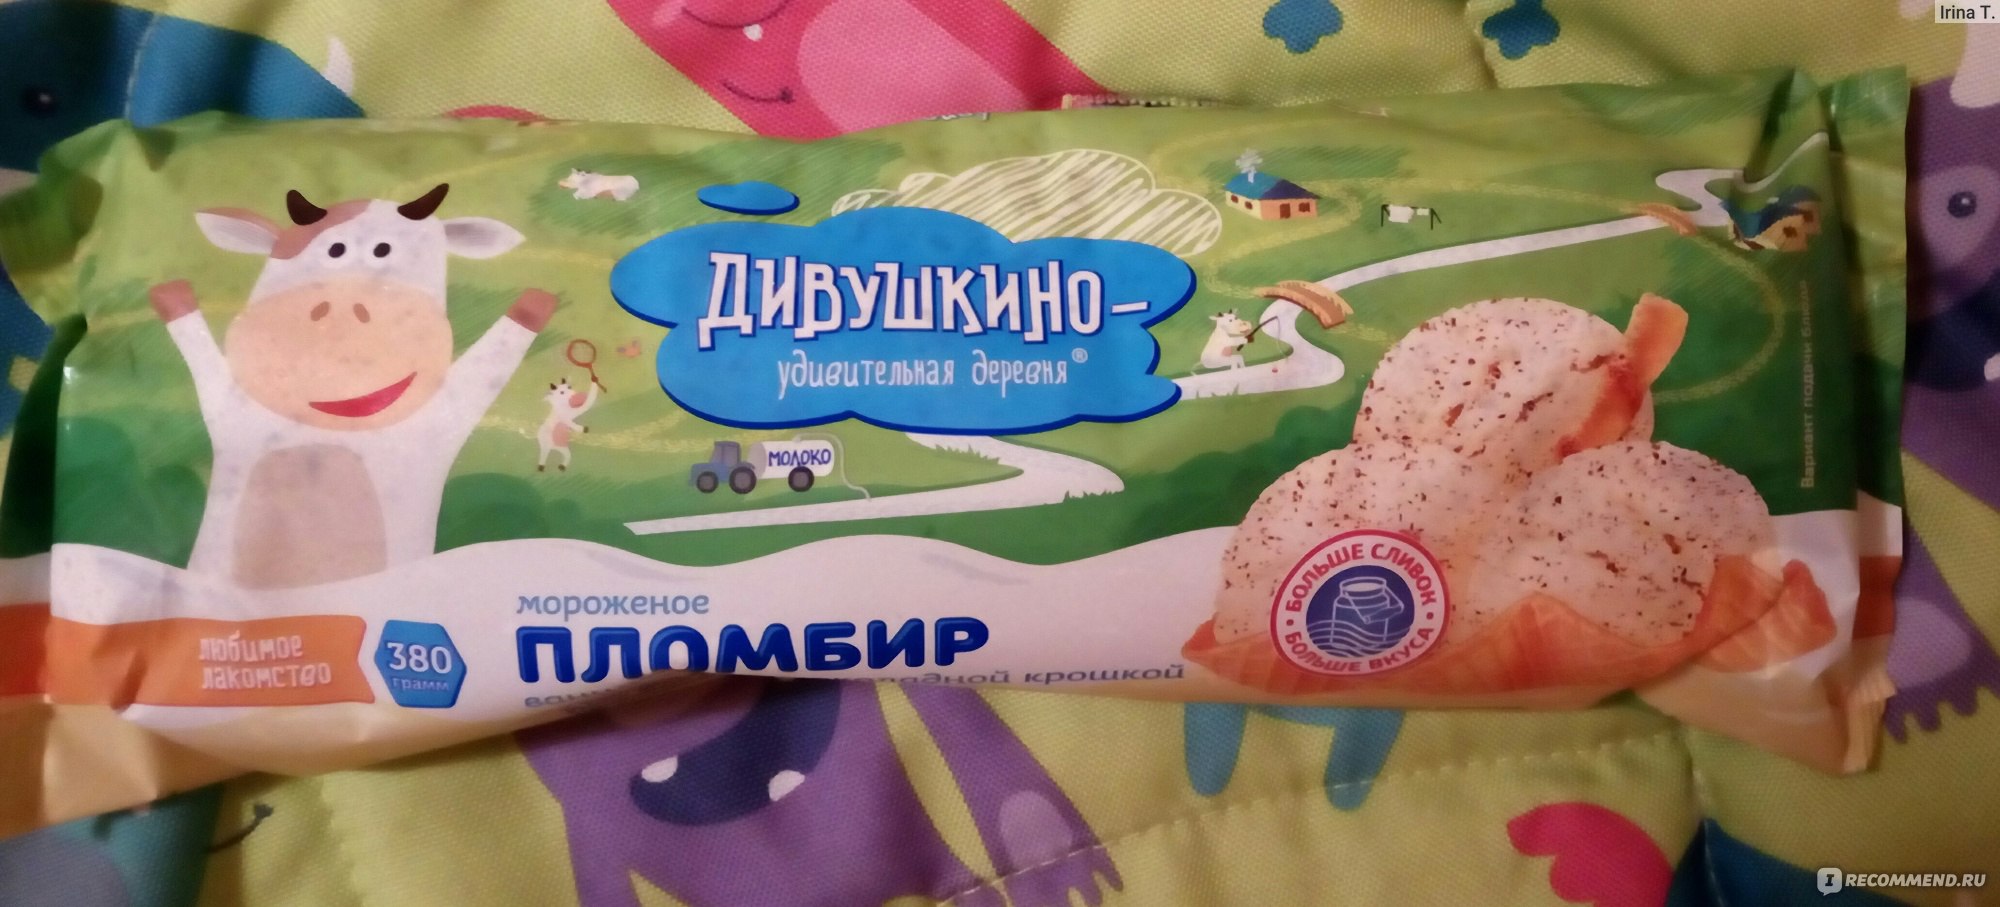 Мороженое ДИВУШКИНО С шоколадной крошкой